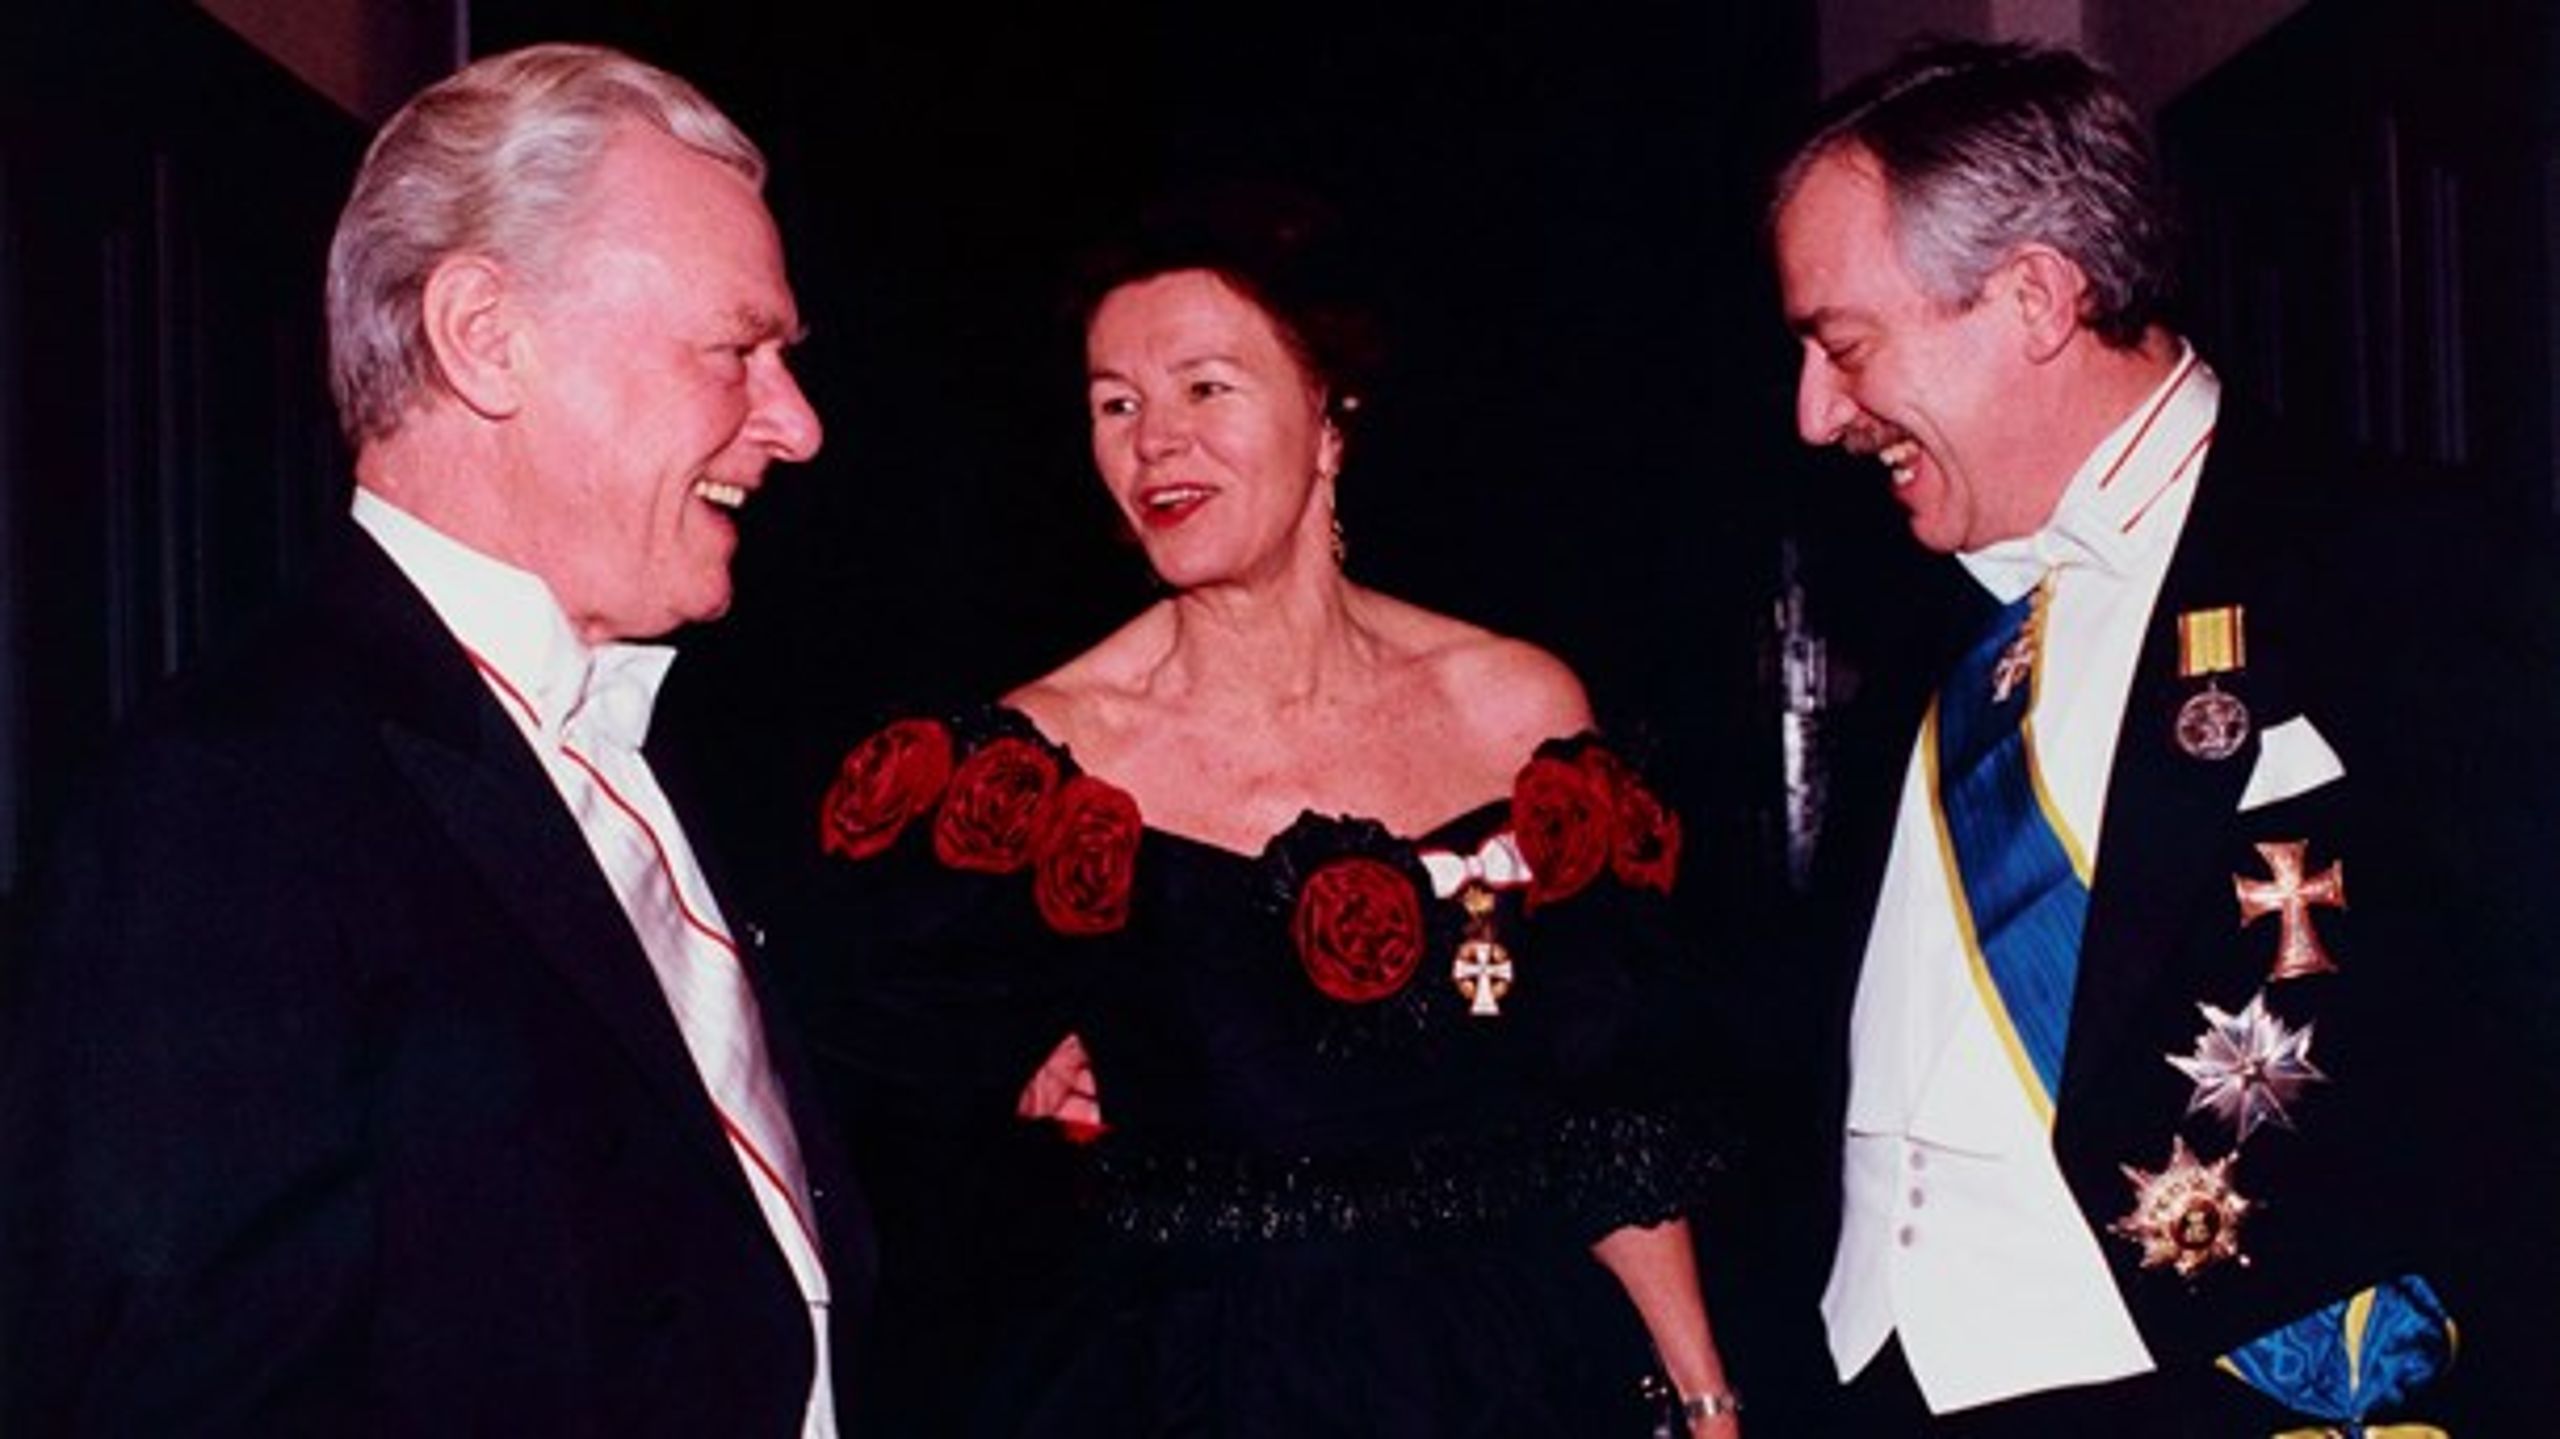 Tidligere kulturminister Grethe Rostbøll (K) her i selskab med Poul Schlüter og Uffe Ellemann Jensen til&nbsp;Dronning Margrethes nytårstaffel i residenspalæet på Amalienborg.